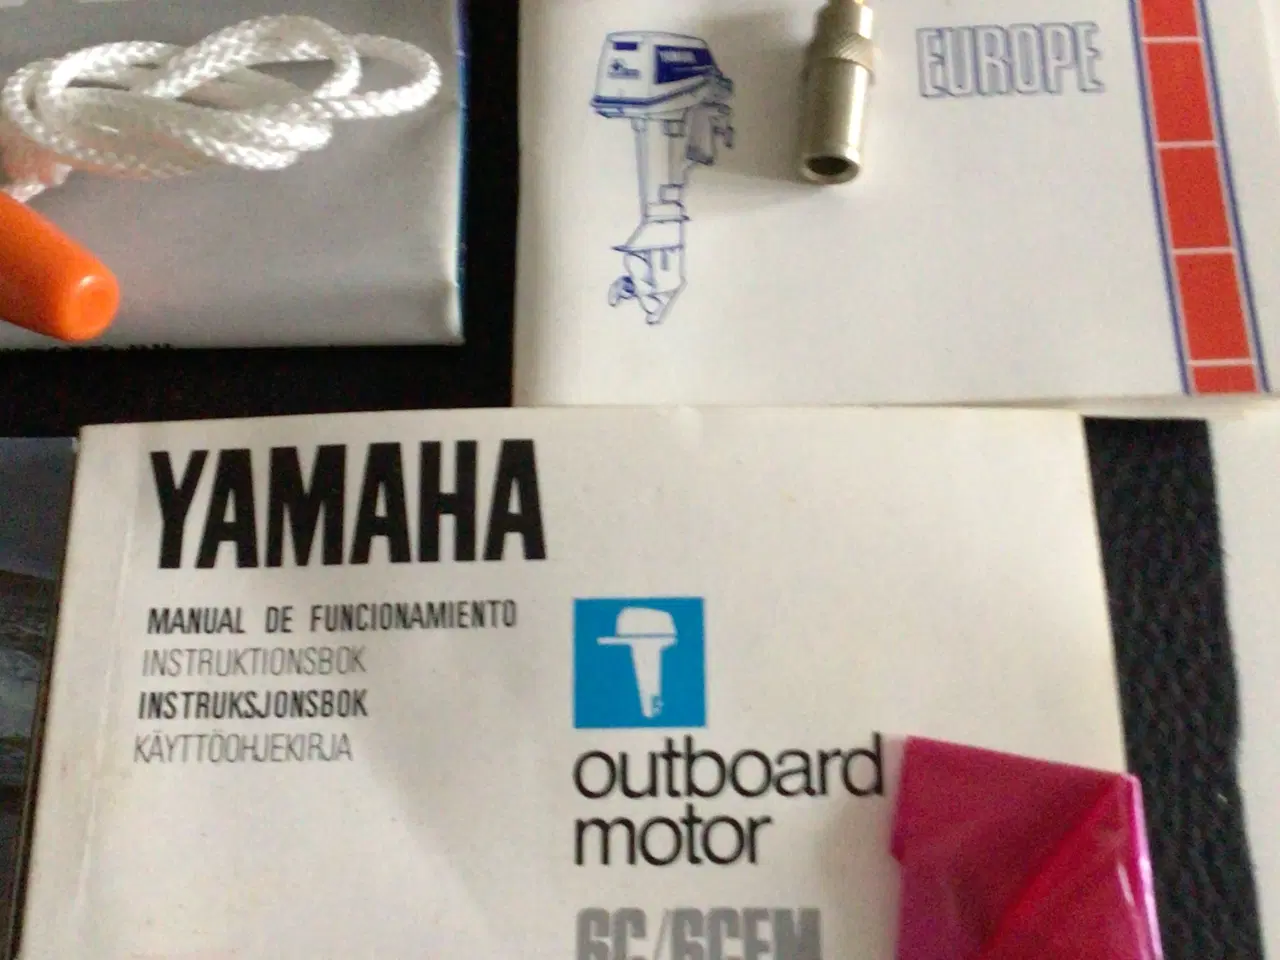 Billede 2 - Yamaha bådmotor instruktionsbog mm